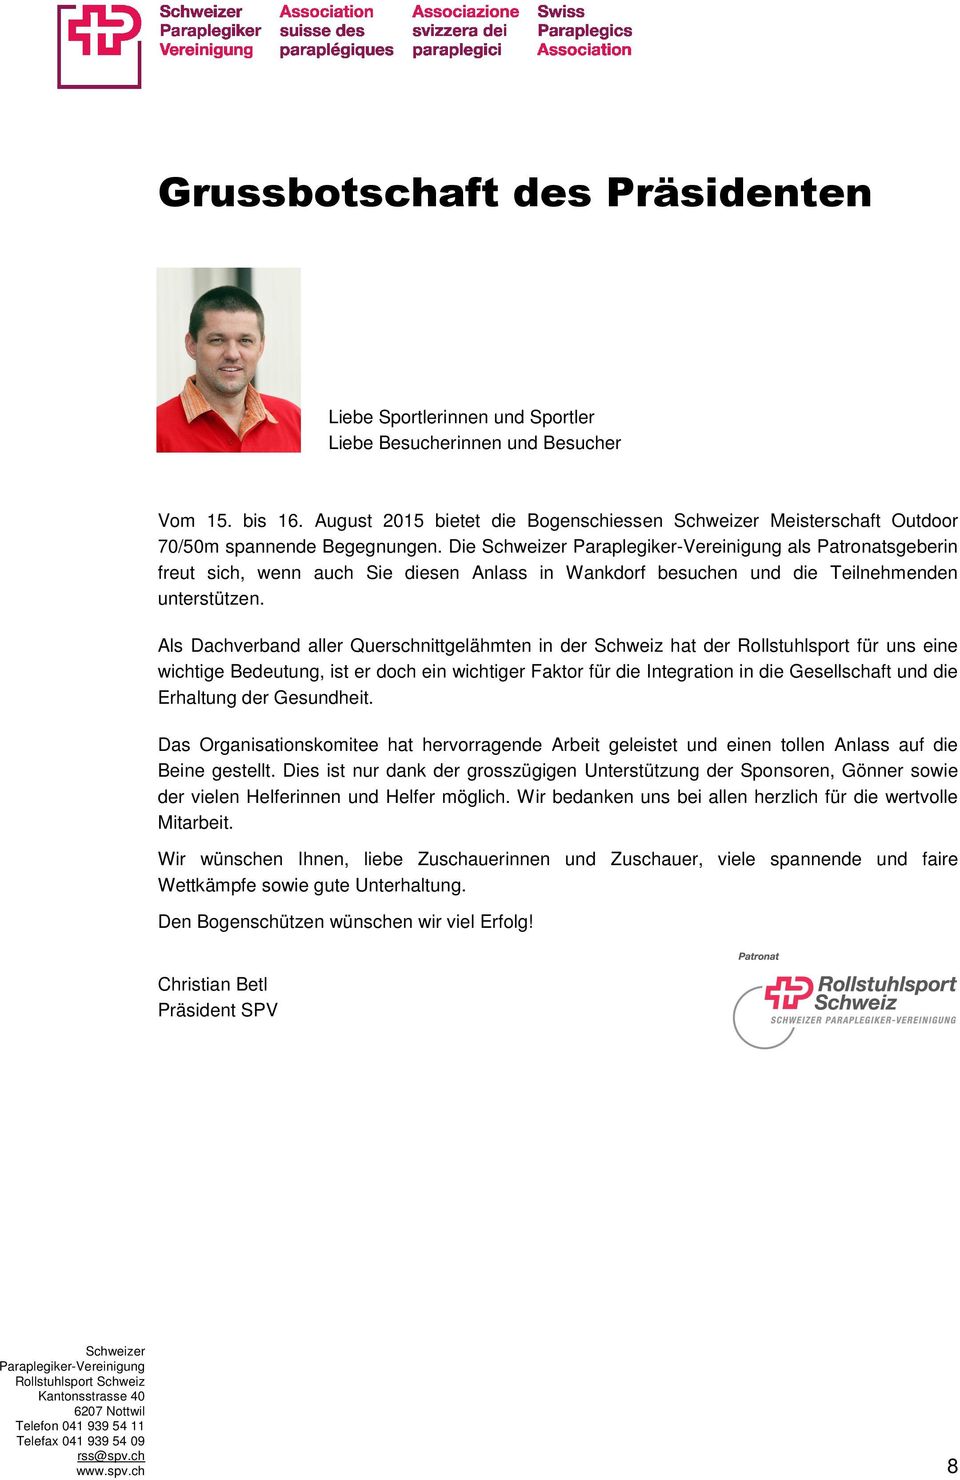 Die Schweizer Paraplegiker-Vereinigung als Patronatsgeberin freut sich, wenn auch Sie diesen Anlass in Wankdorf besuchen und die Teilnehmenden unterstützen.